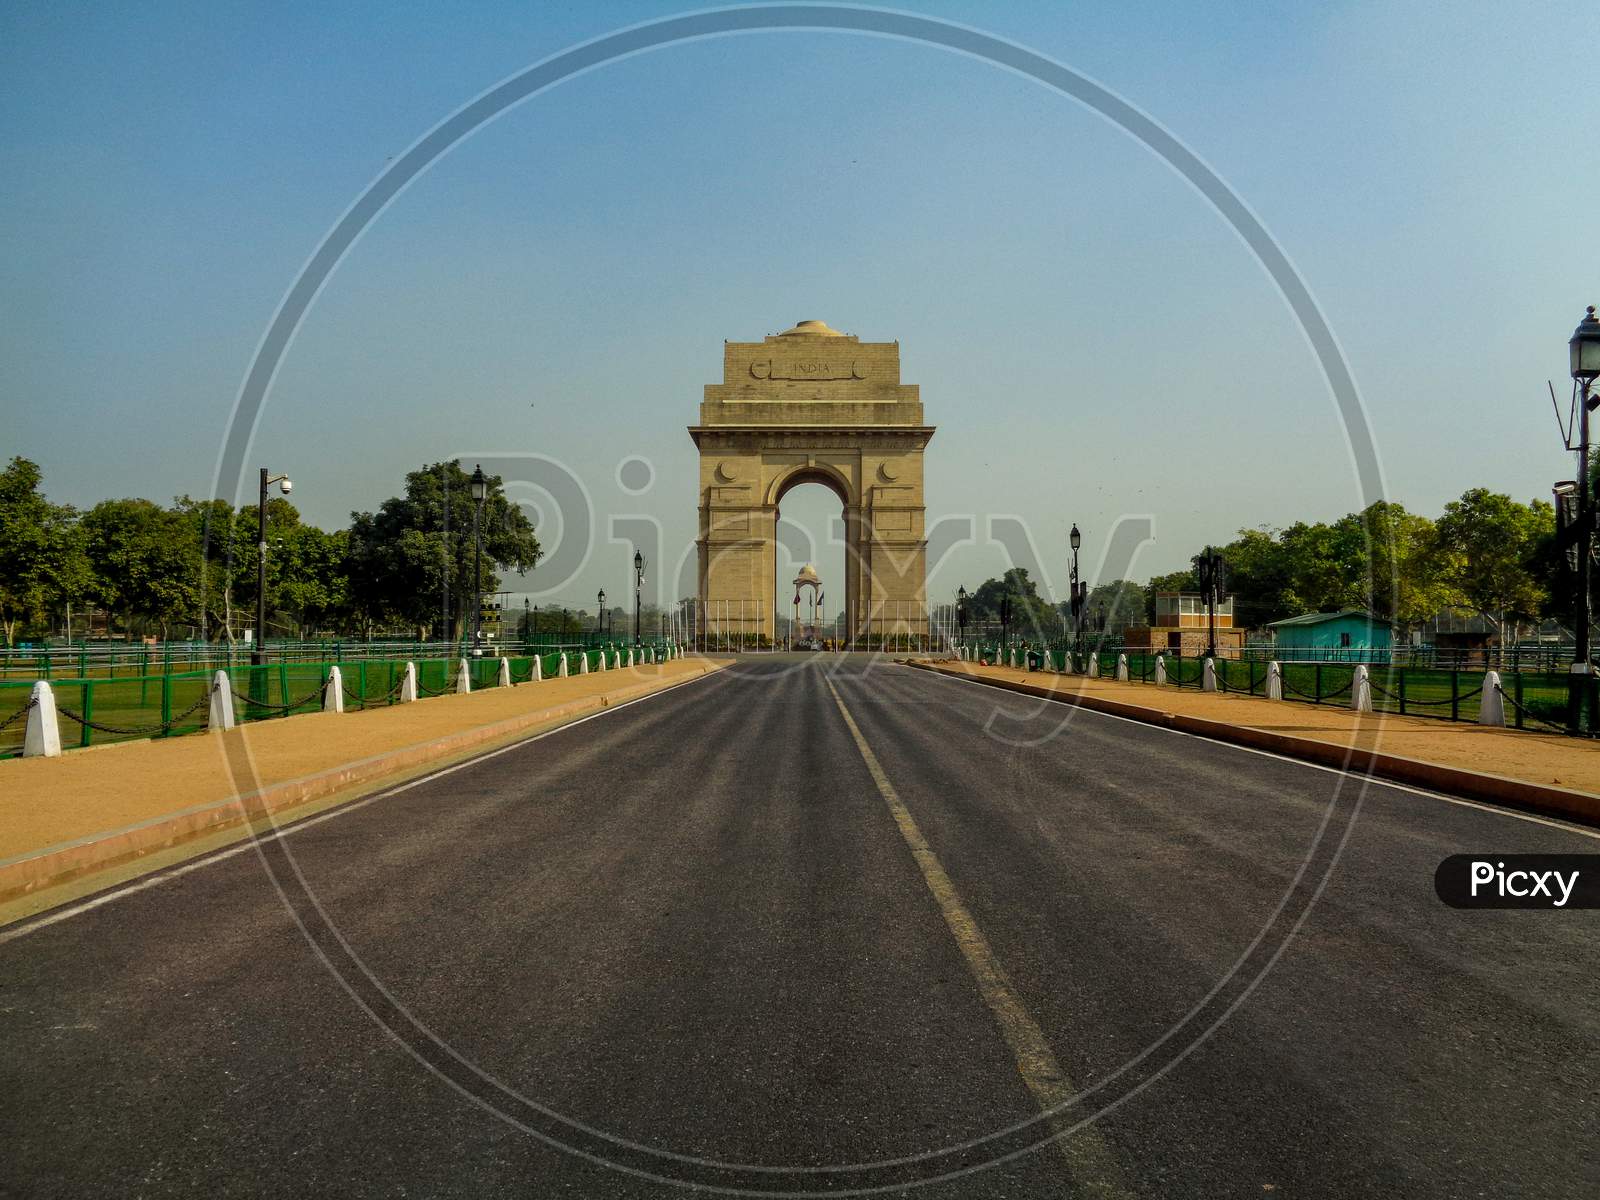 India Gate New Delhi India